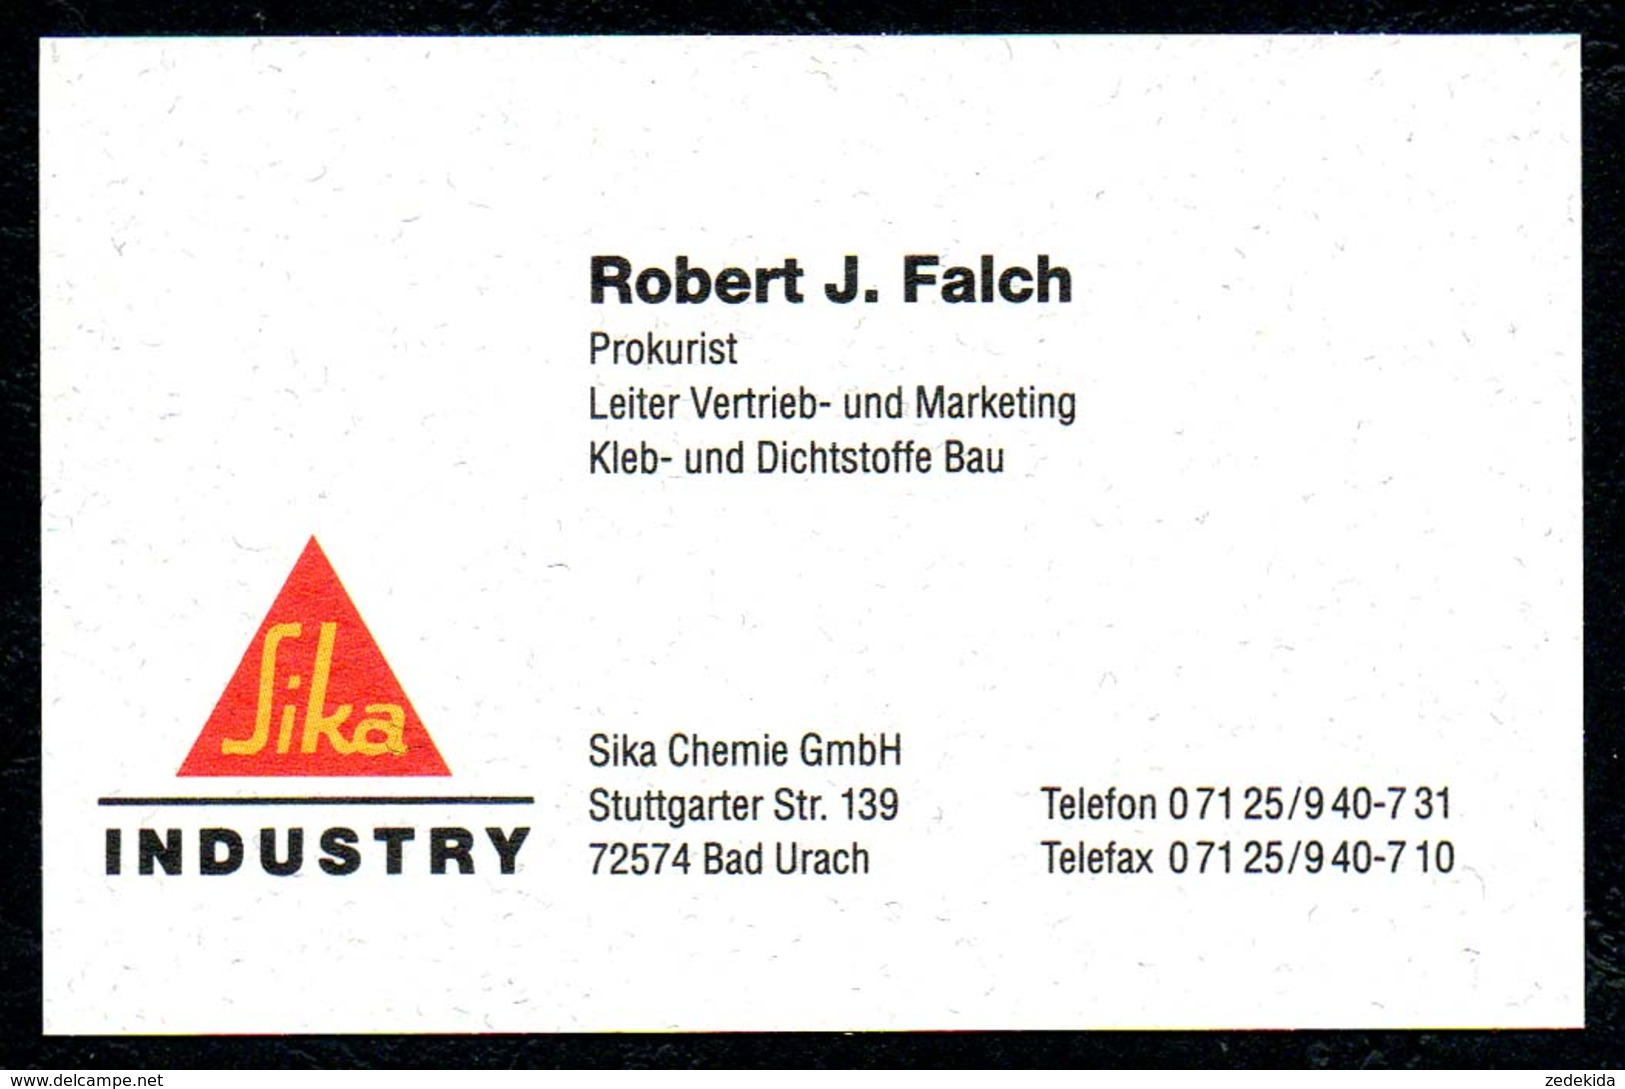 B7338 - Bad Urach - SIKA Industrie - Robert J. Falch Prokurist - Visitenkarte - Visitenkarten